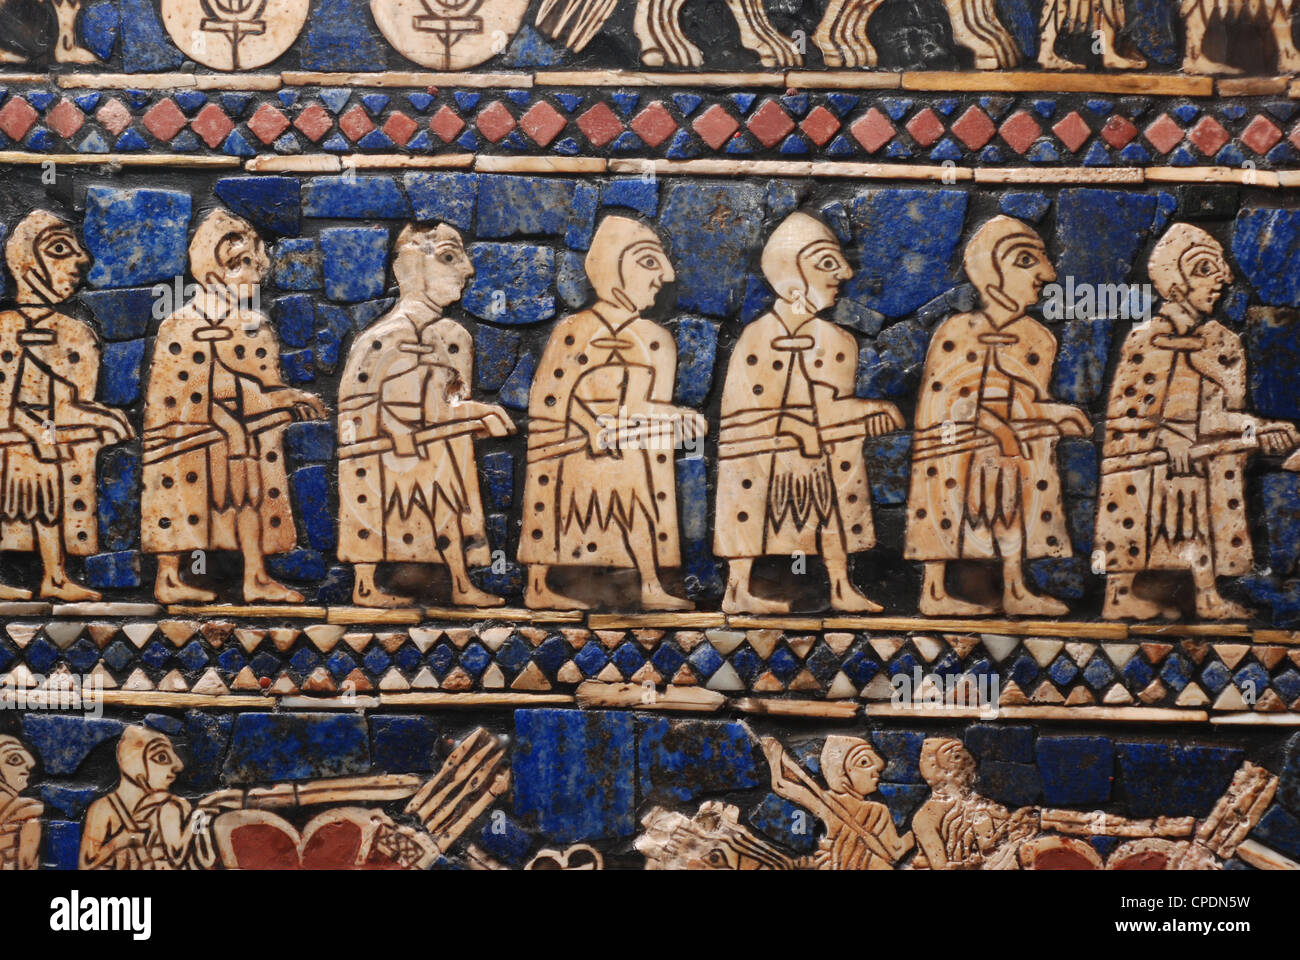 UR DE STANDART, datant de 2600 av. J.-C. UN TRAVAIL D'ART richement décorées, incrustés de COQUILLE ET LAPIS-LAZULI, DÉTAIL ILLUSTRANT S Banque D'Images